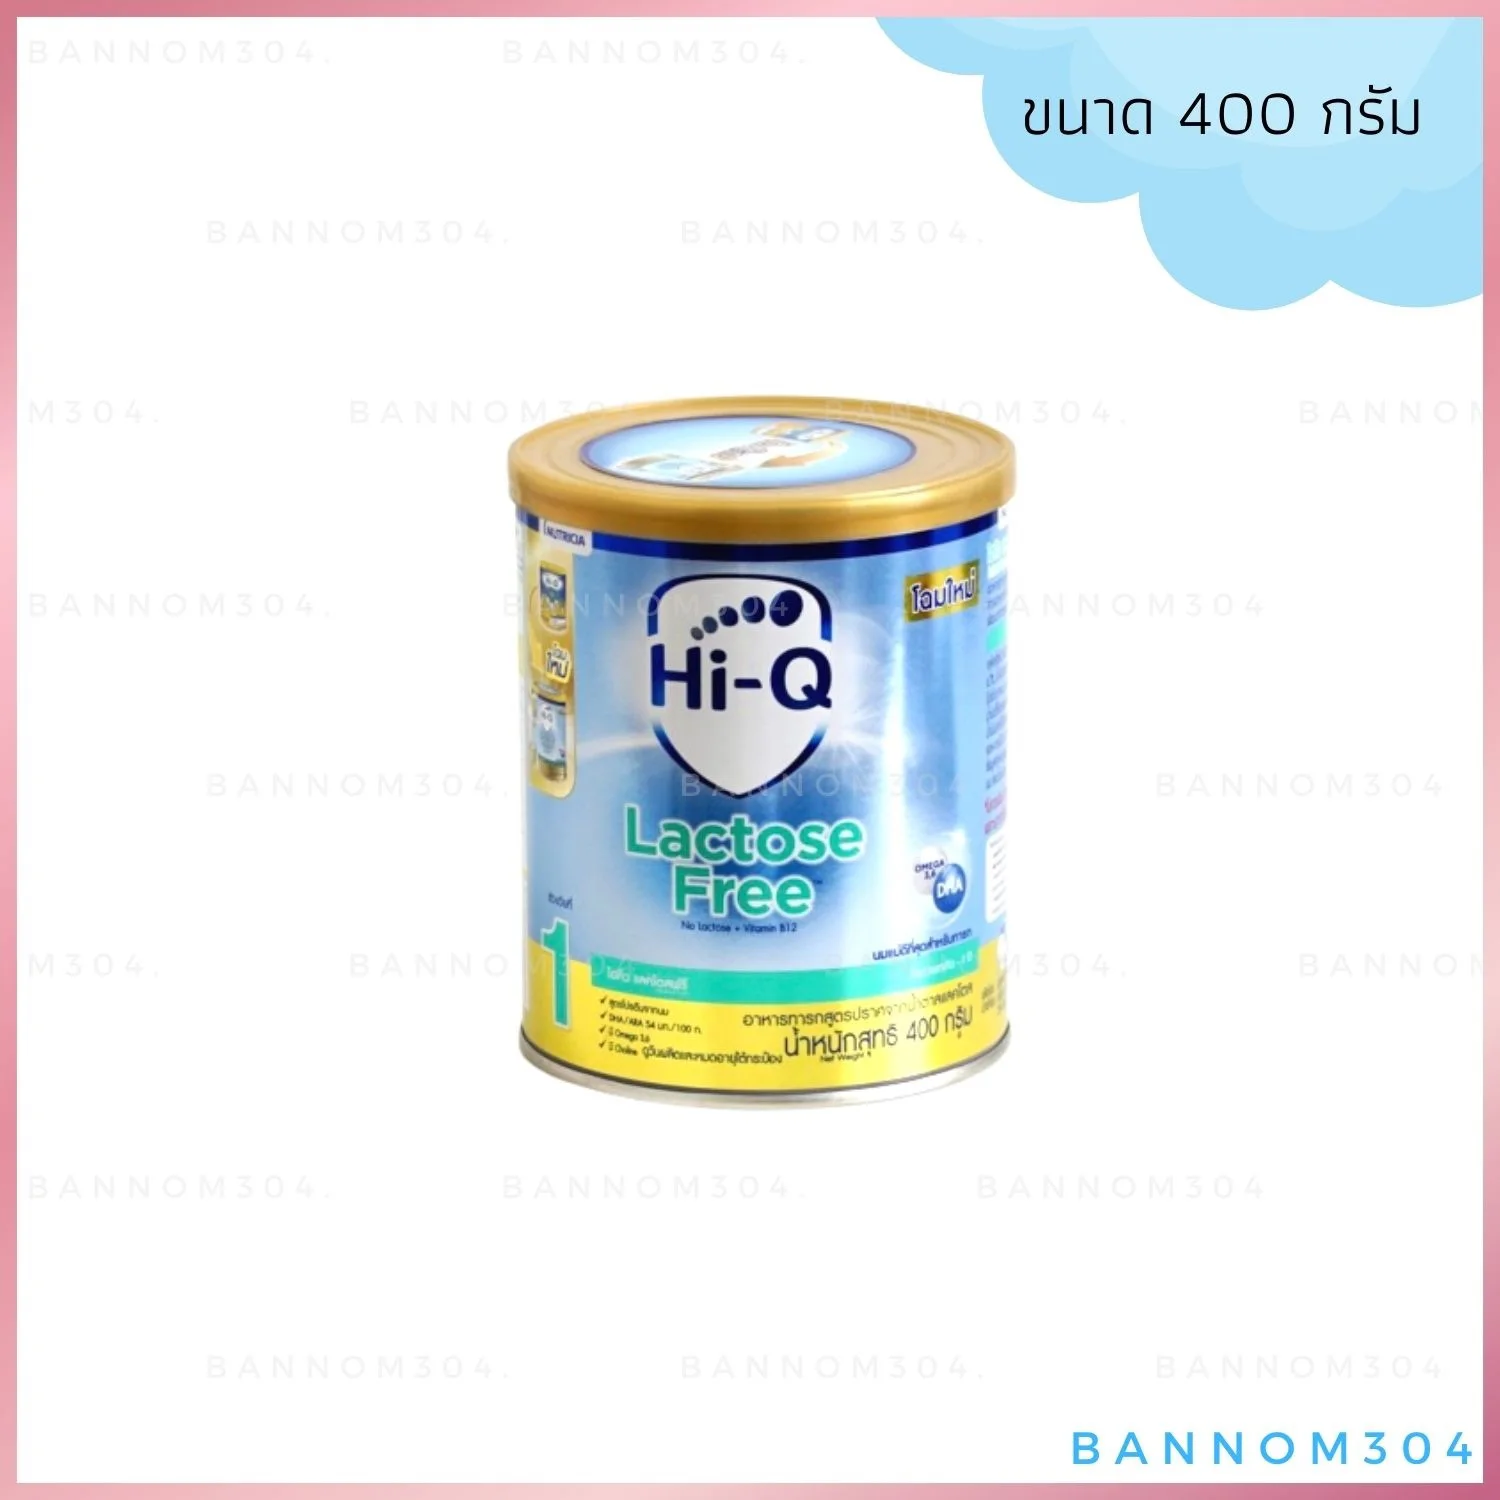 Hi-Q lactose Free นมผง ไฮคิว แลกโตสฟรี สำหรับช่วงท้องเสีย ขนาด 400 กรัม